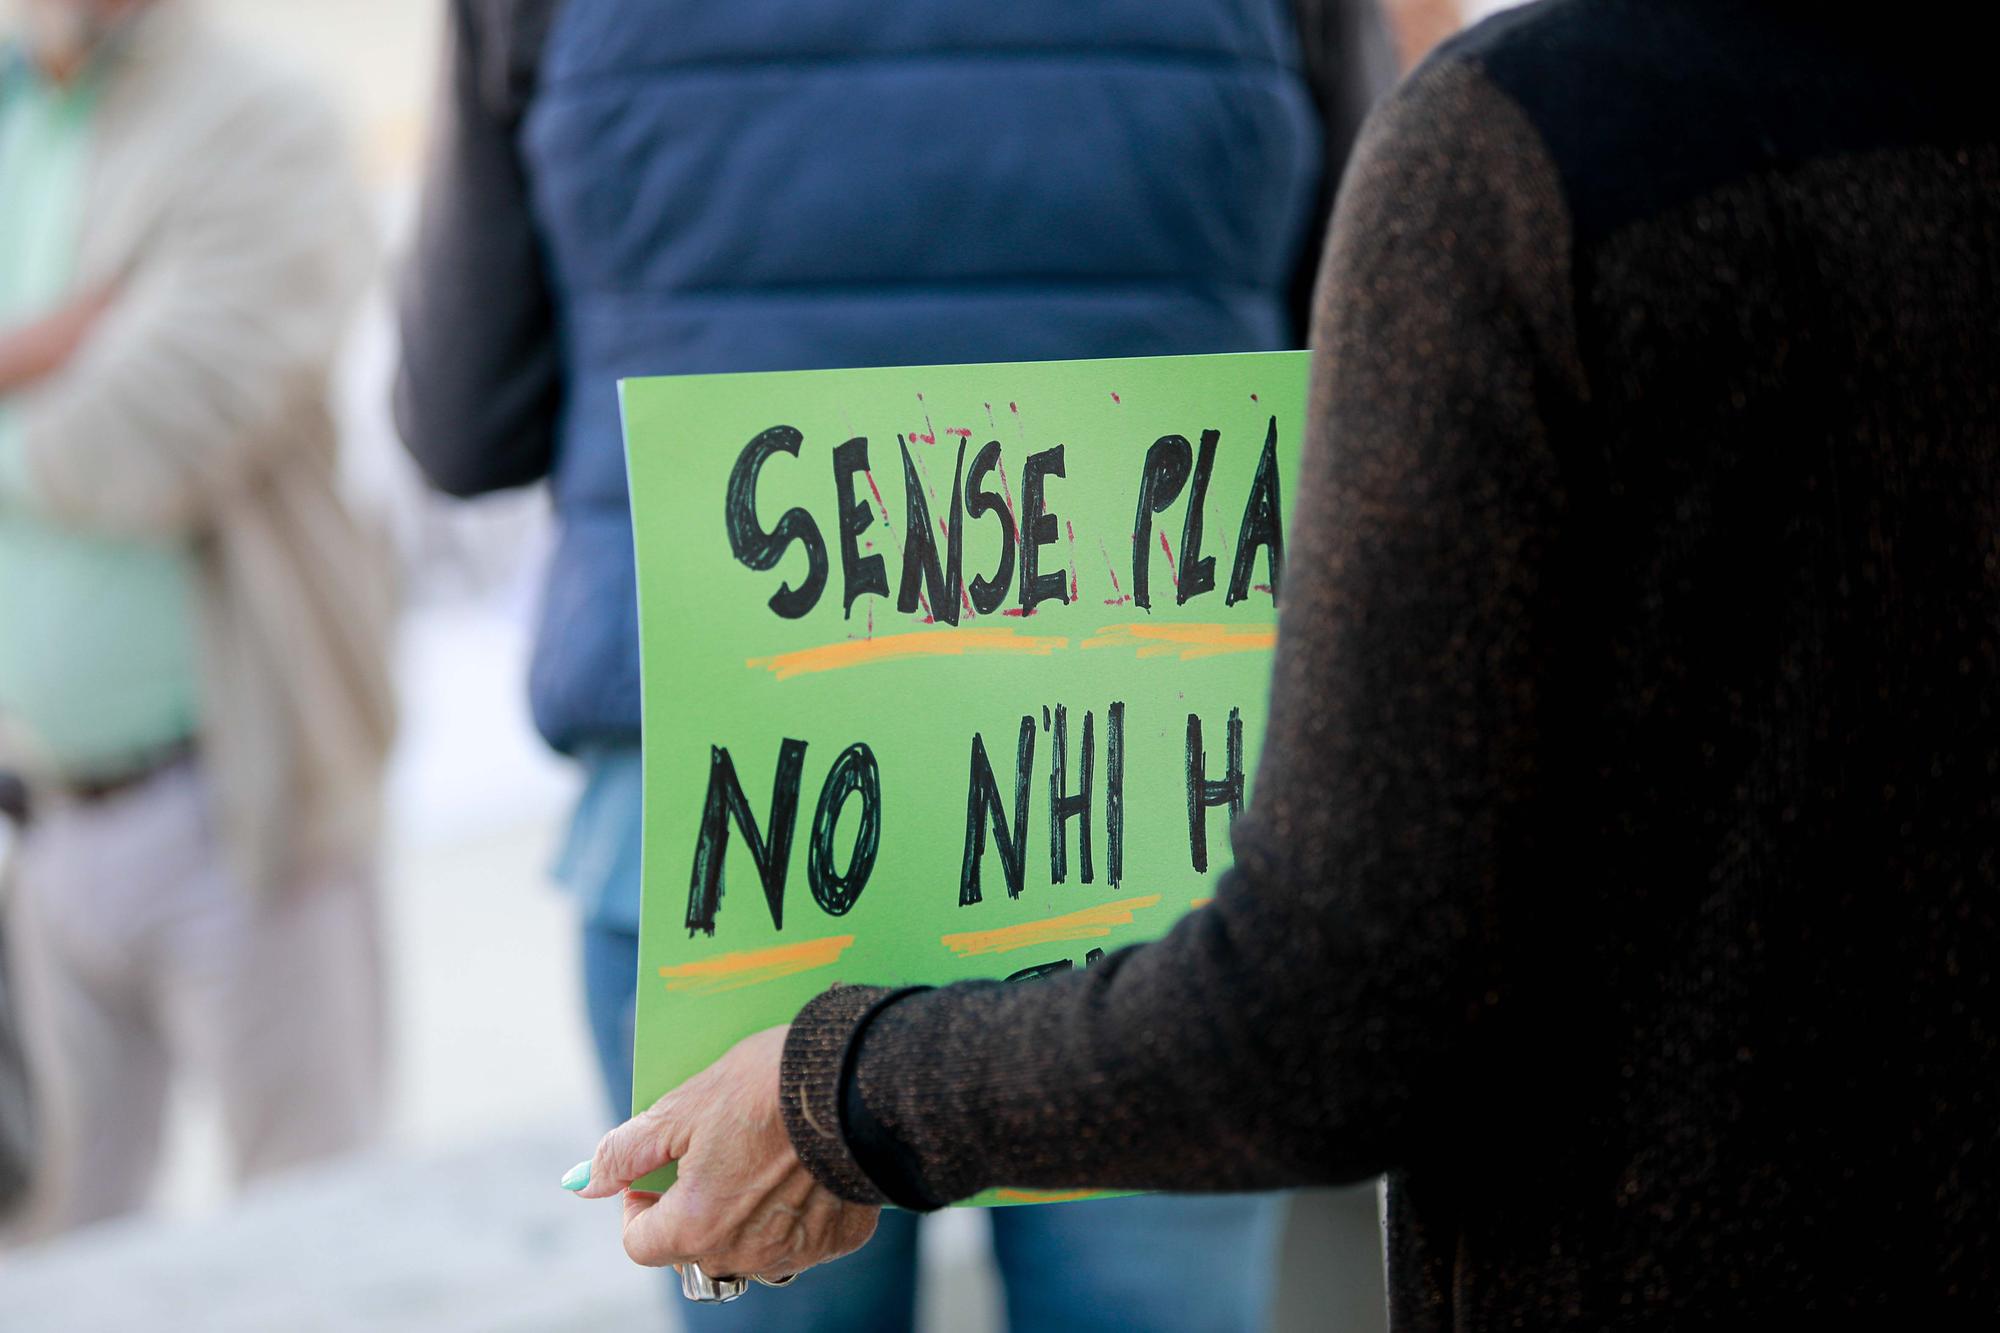 Galería de imágenes de la protesta de 'Eivissa es rebel·la' frente a los juzgados de Ibiza